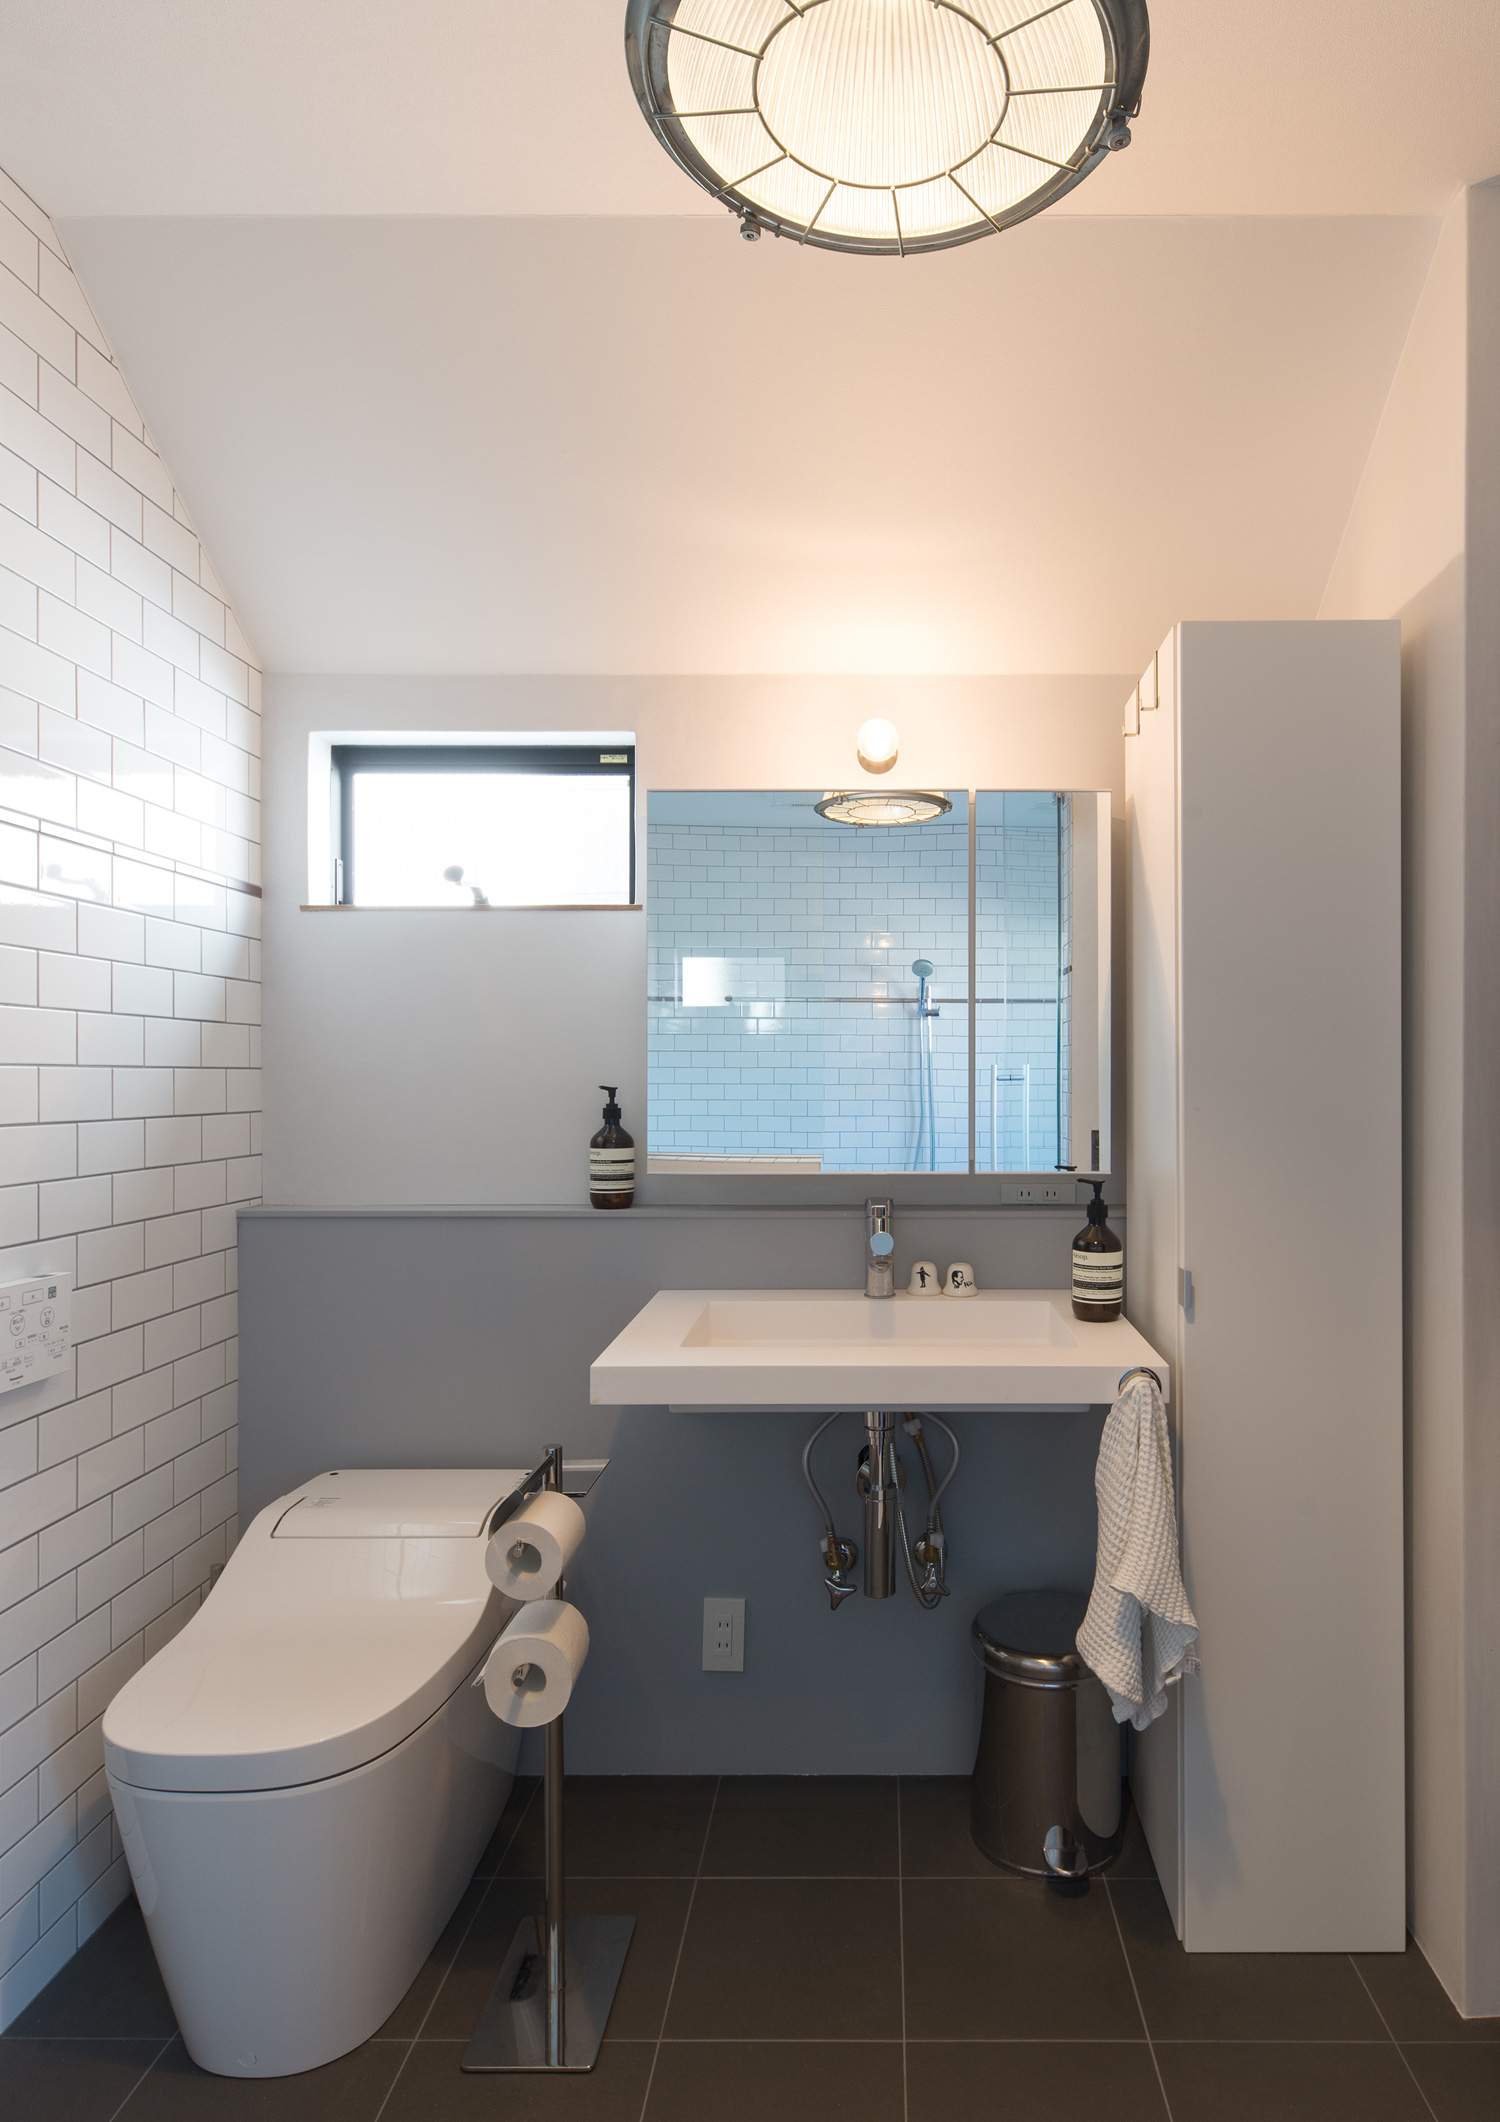 トイレと洗面台が並んだタイルの壁の空間・デザイン住宅